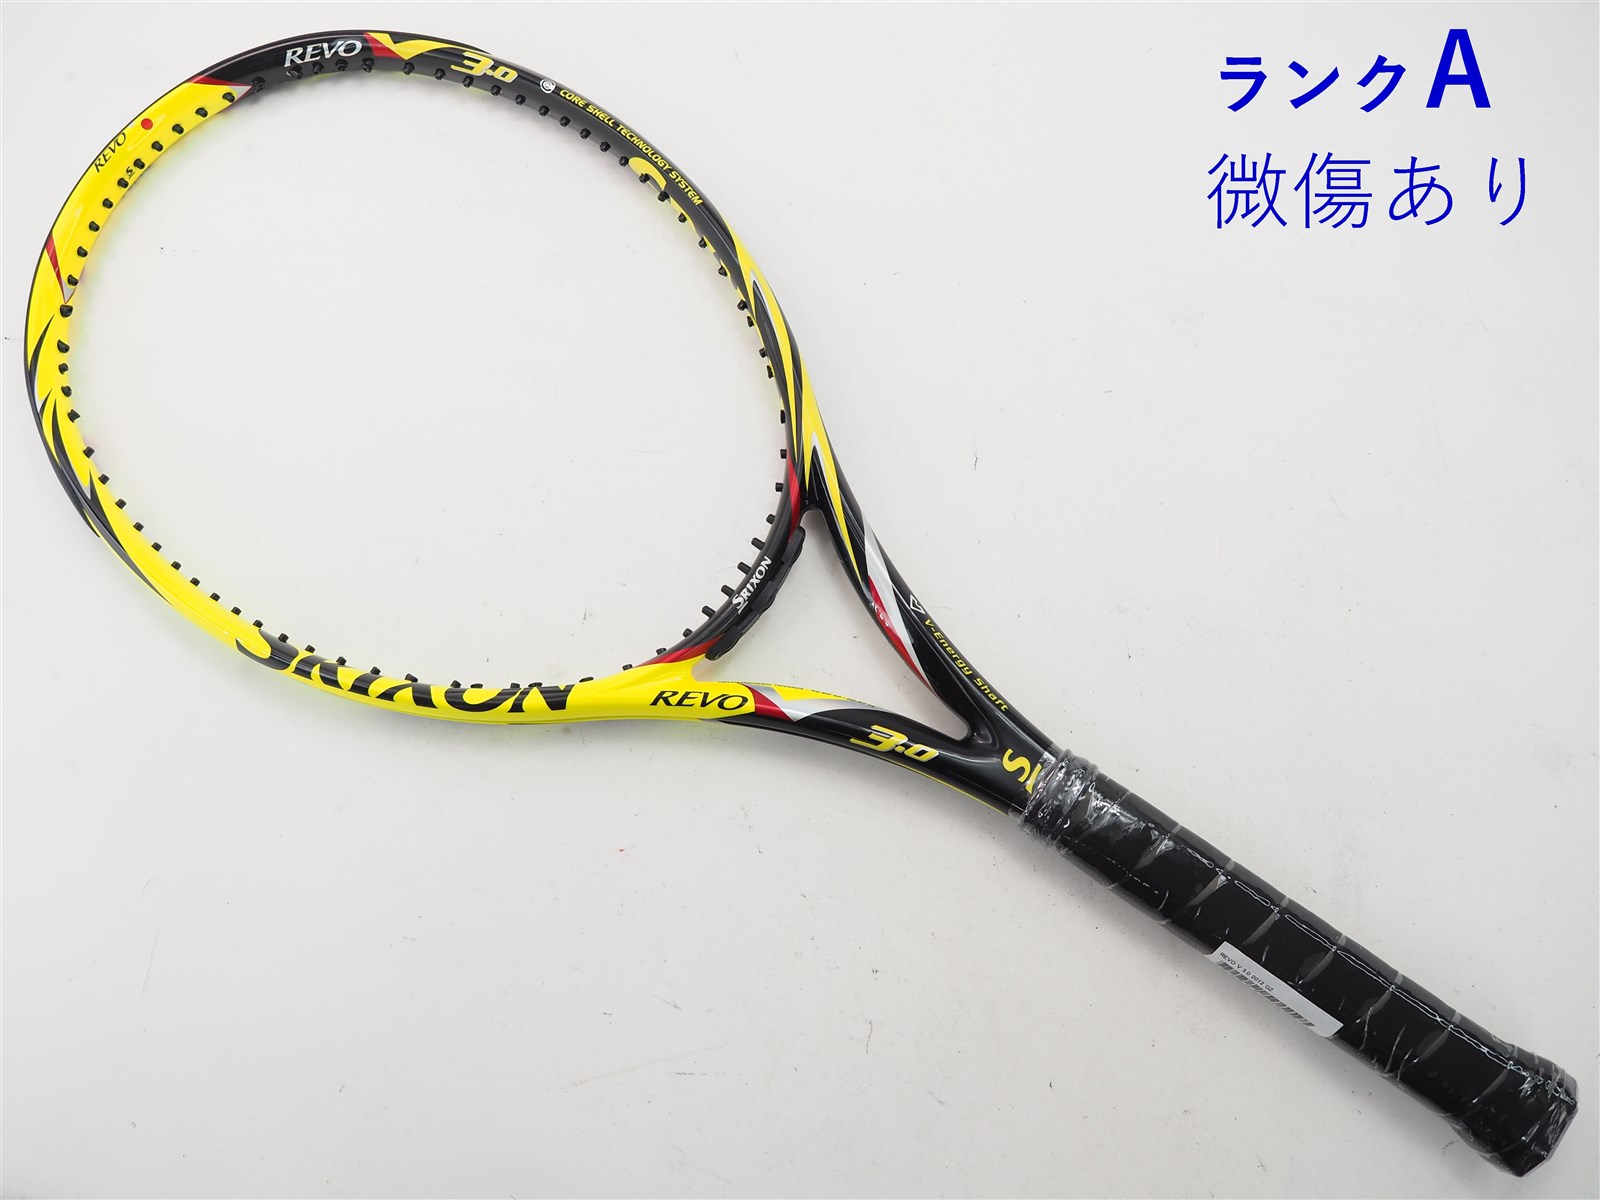 ② SRIXON REVO CS 10.0 硬式用テニスラケット G2 - テニス